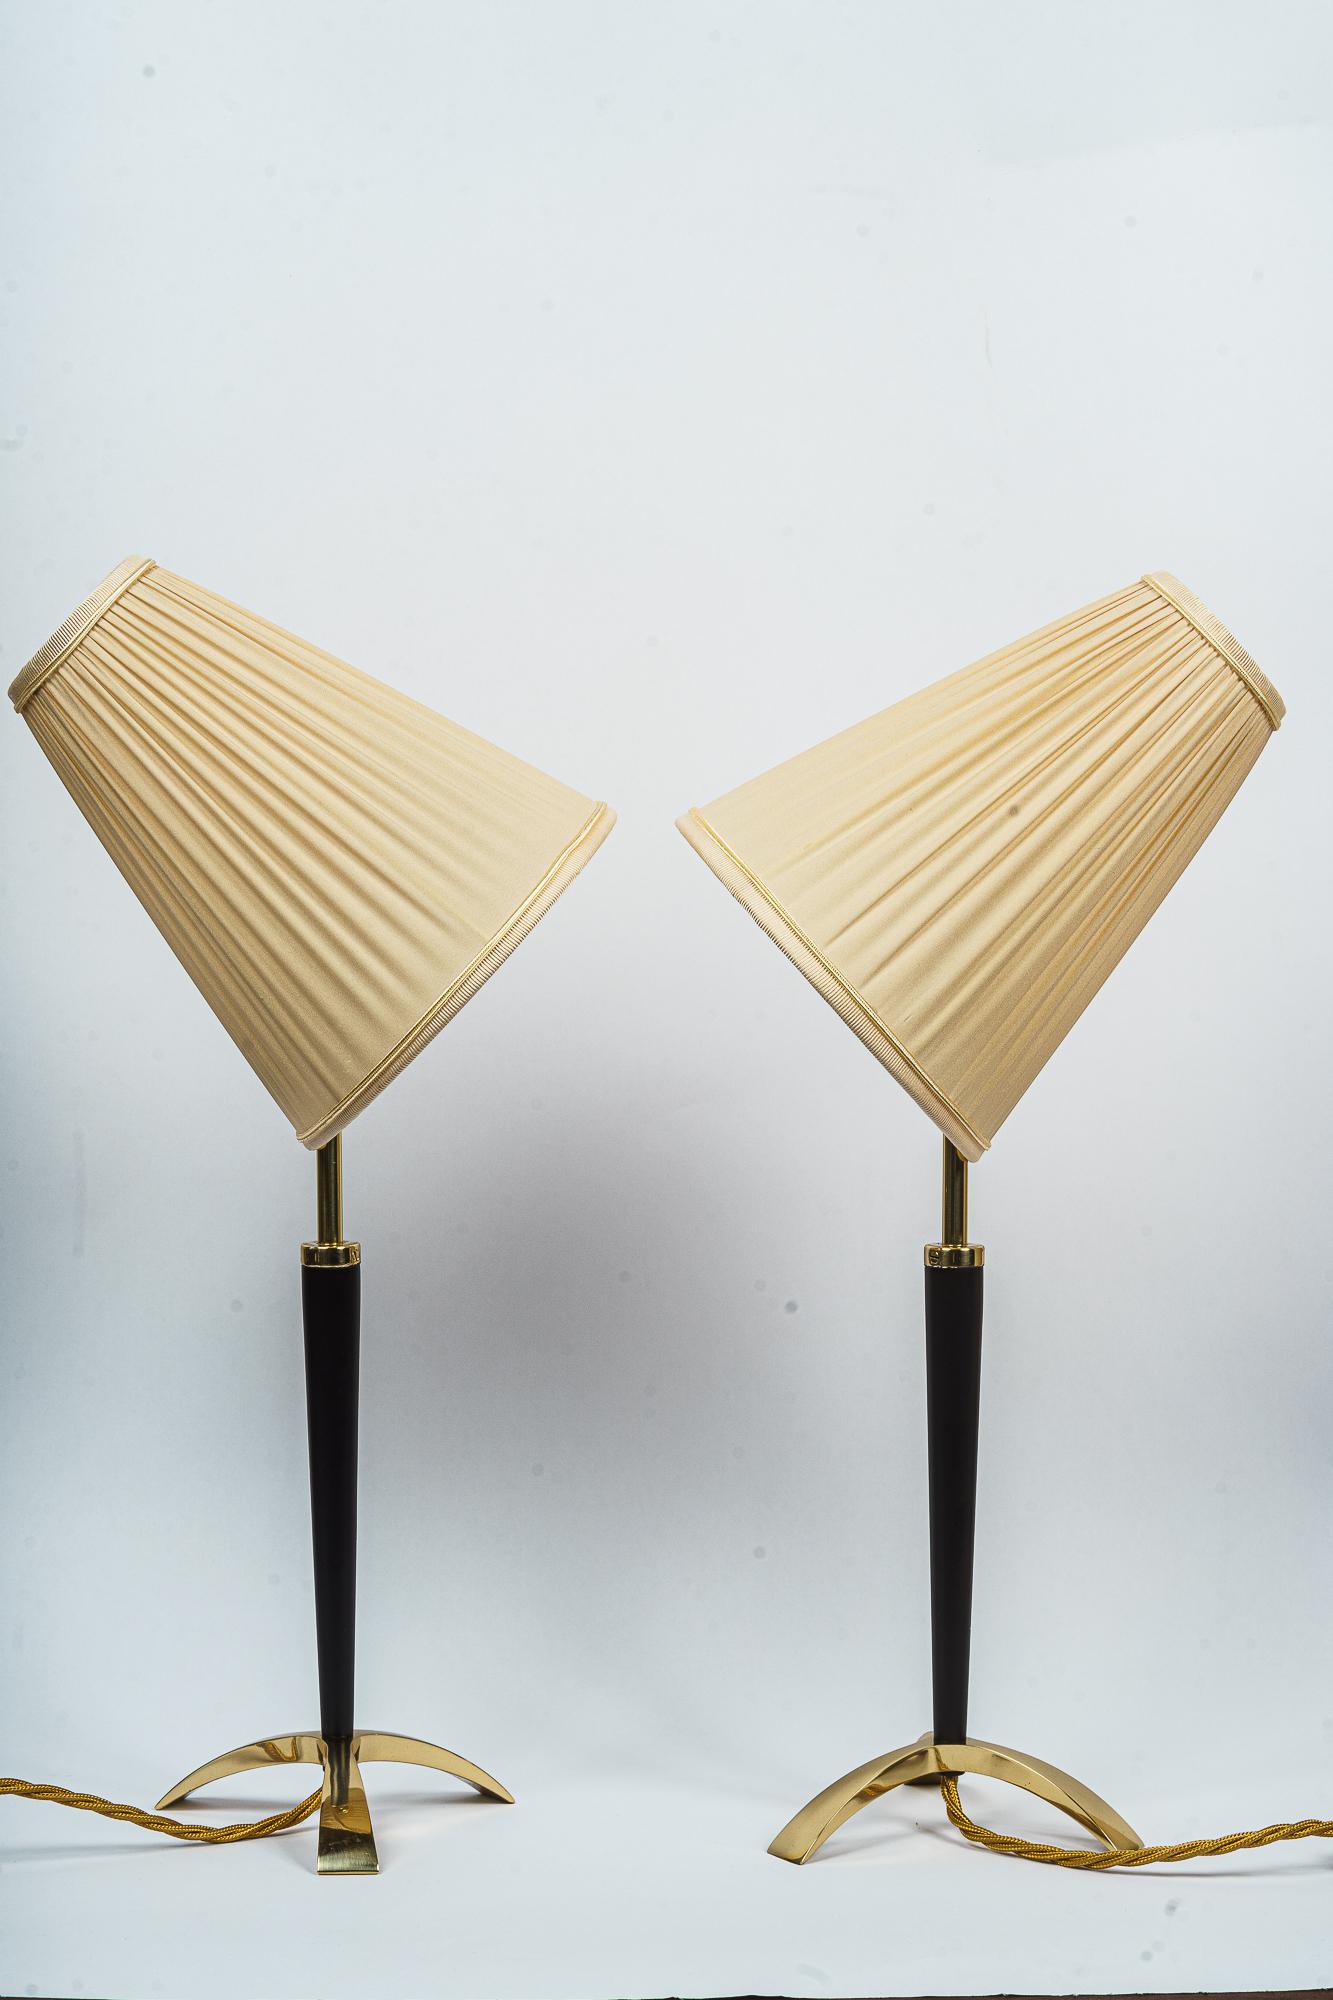 Zwei ausziehbare Tischlampen von J.T. Kalmar, ca. 1950er Jahre
Ausziehbar in der Höhe von 50cm bis zu 54cm
Messingteile sind poliert und einbrennlackiert
Der Stoff wird ersetzt ( neu )
Preis des Paares.